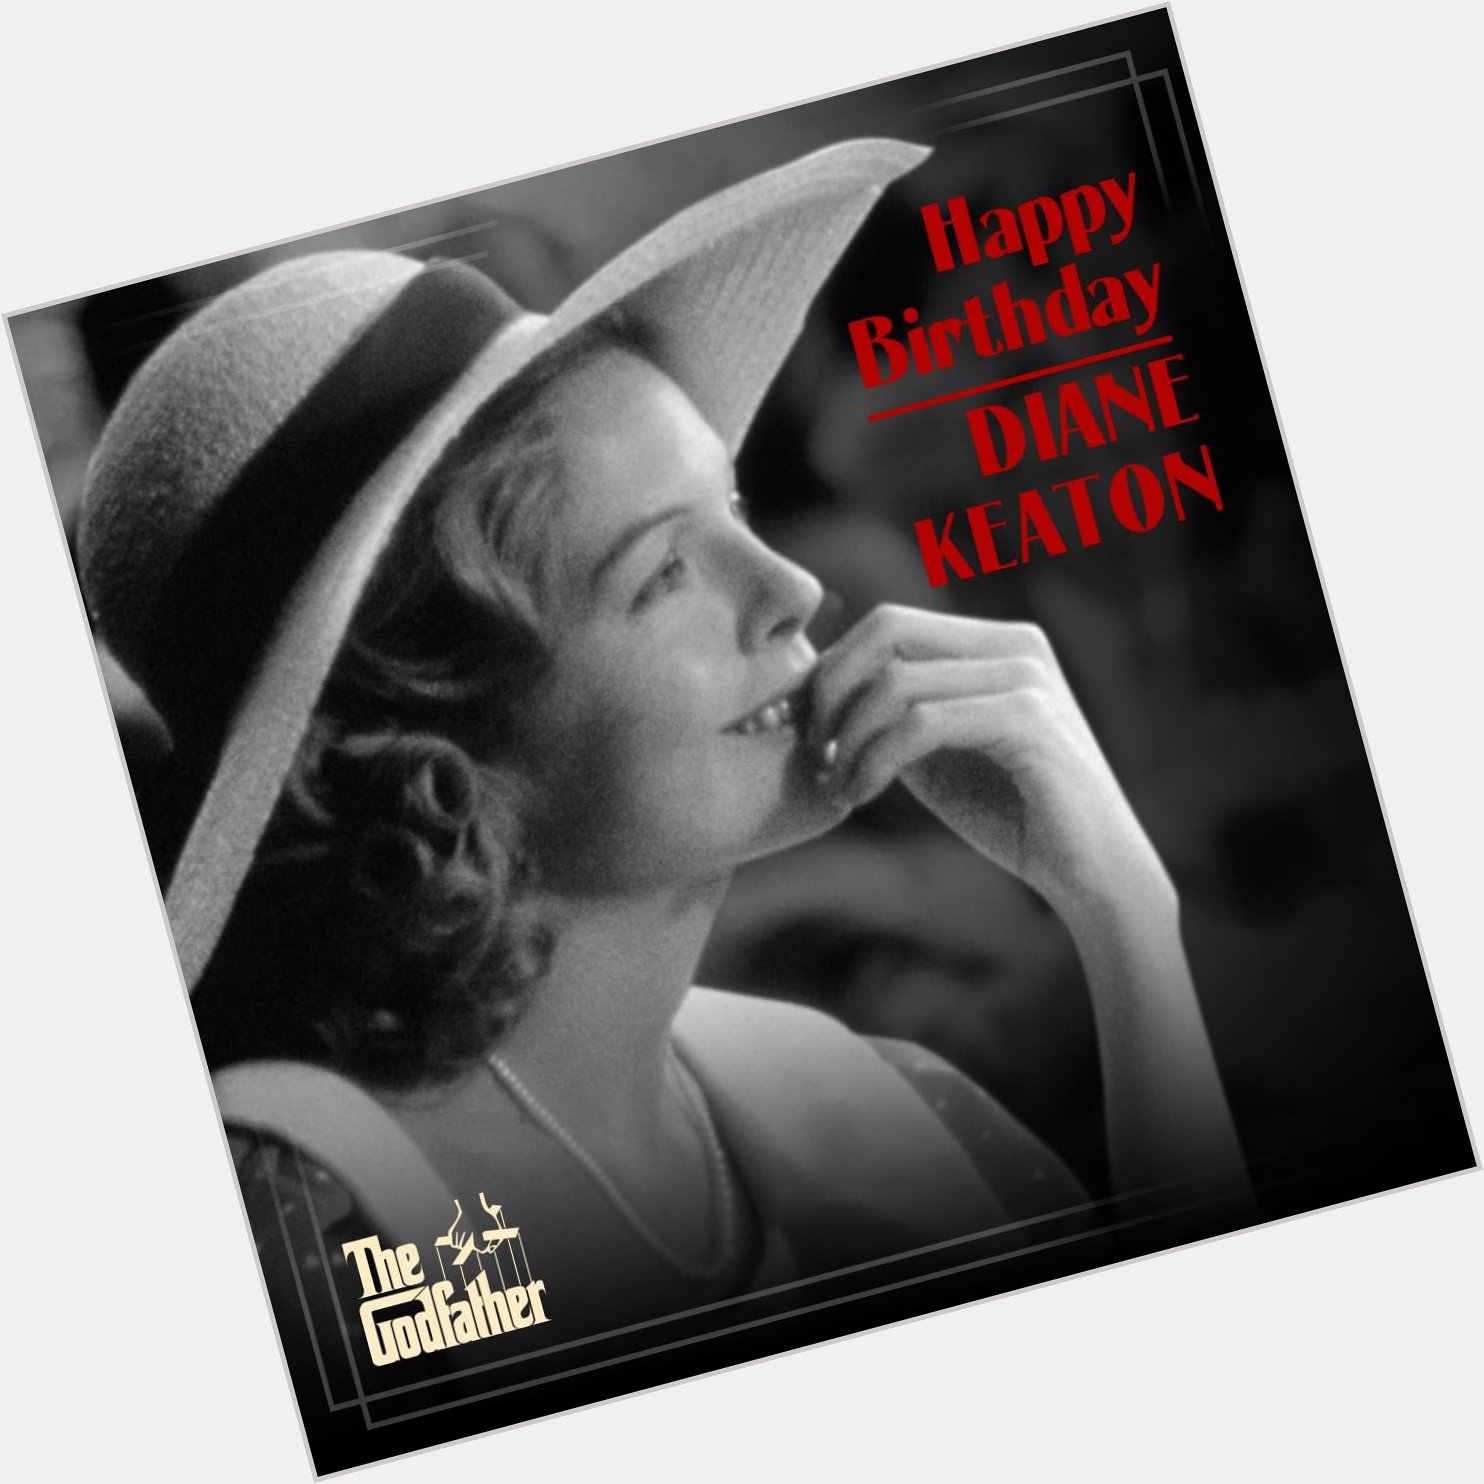 Happy birthday to our Kay, Diane Keaton 